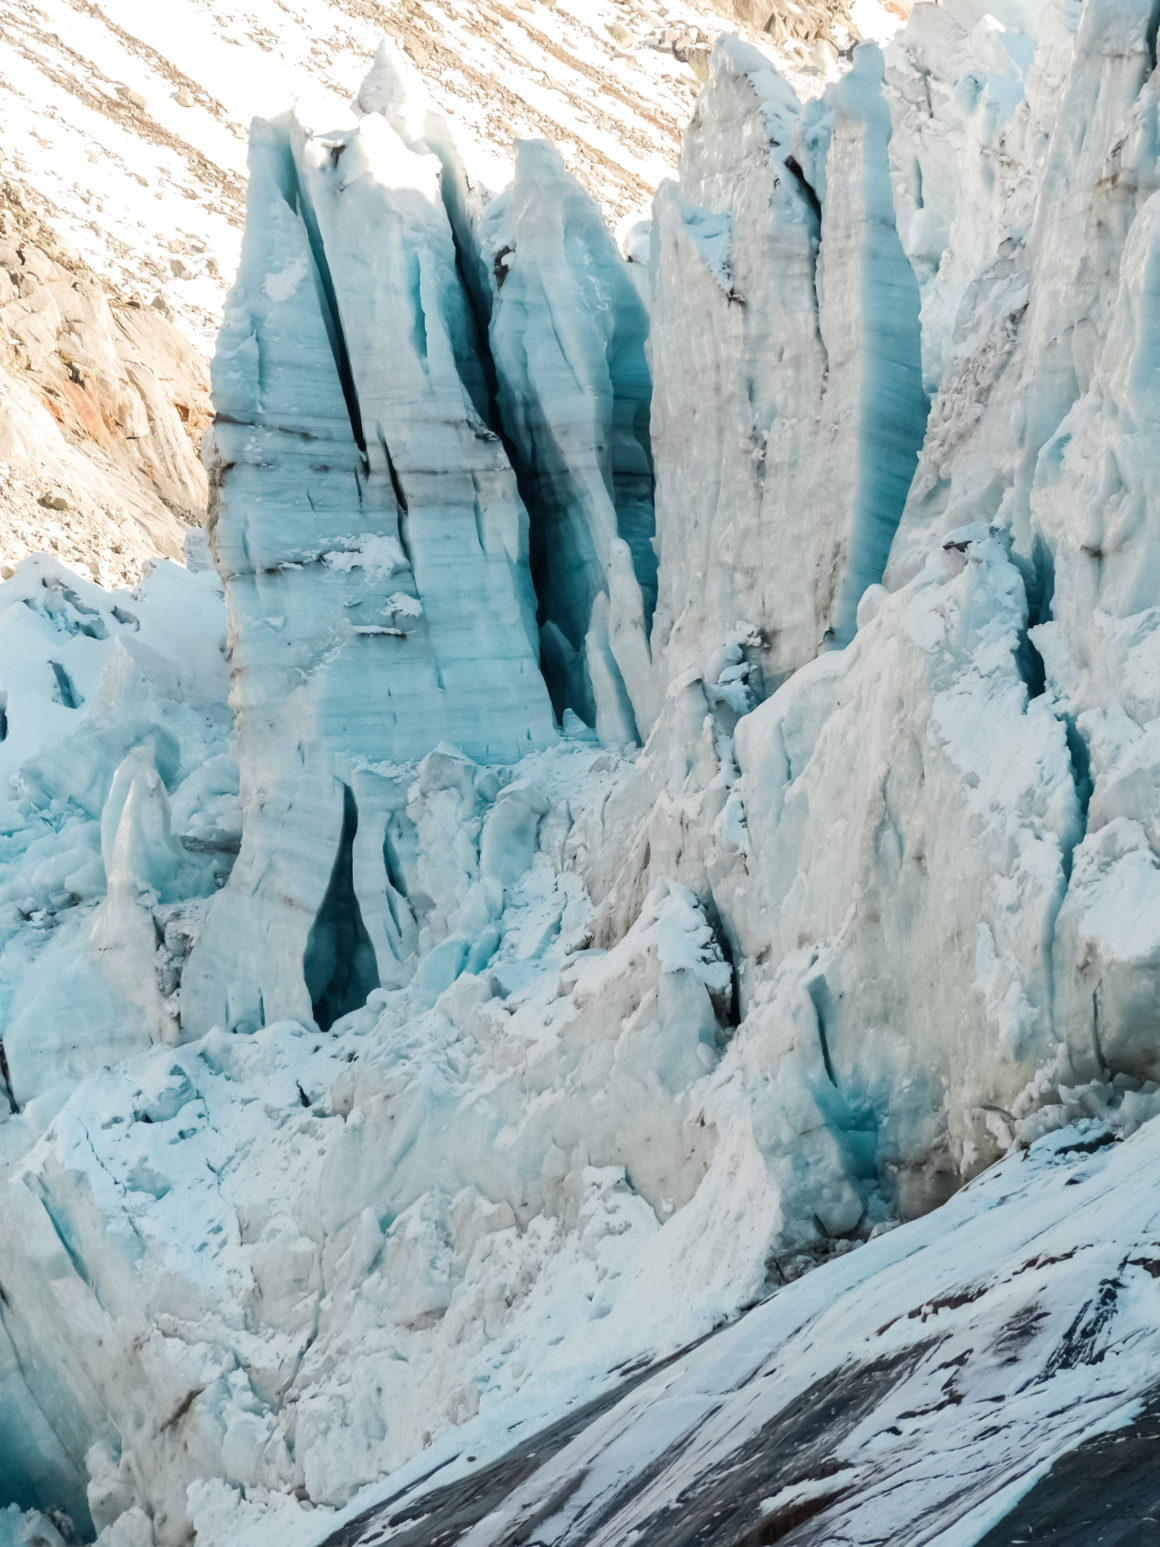 Argentière glacier, Chamonix valley, France © Claire Blumenfeld